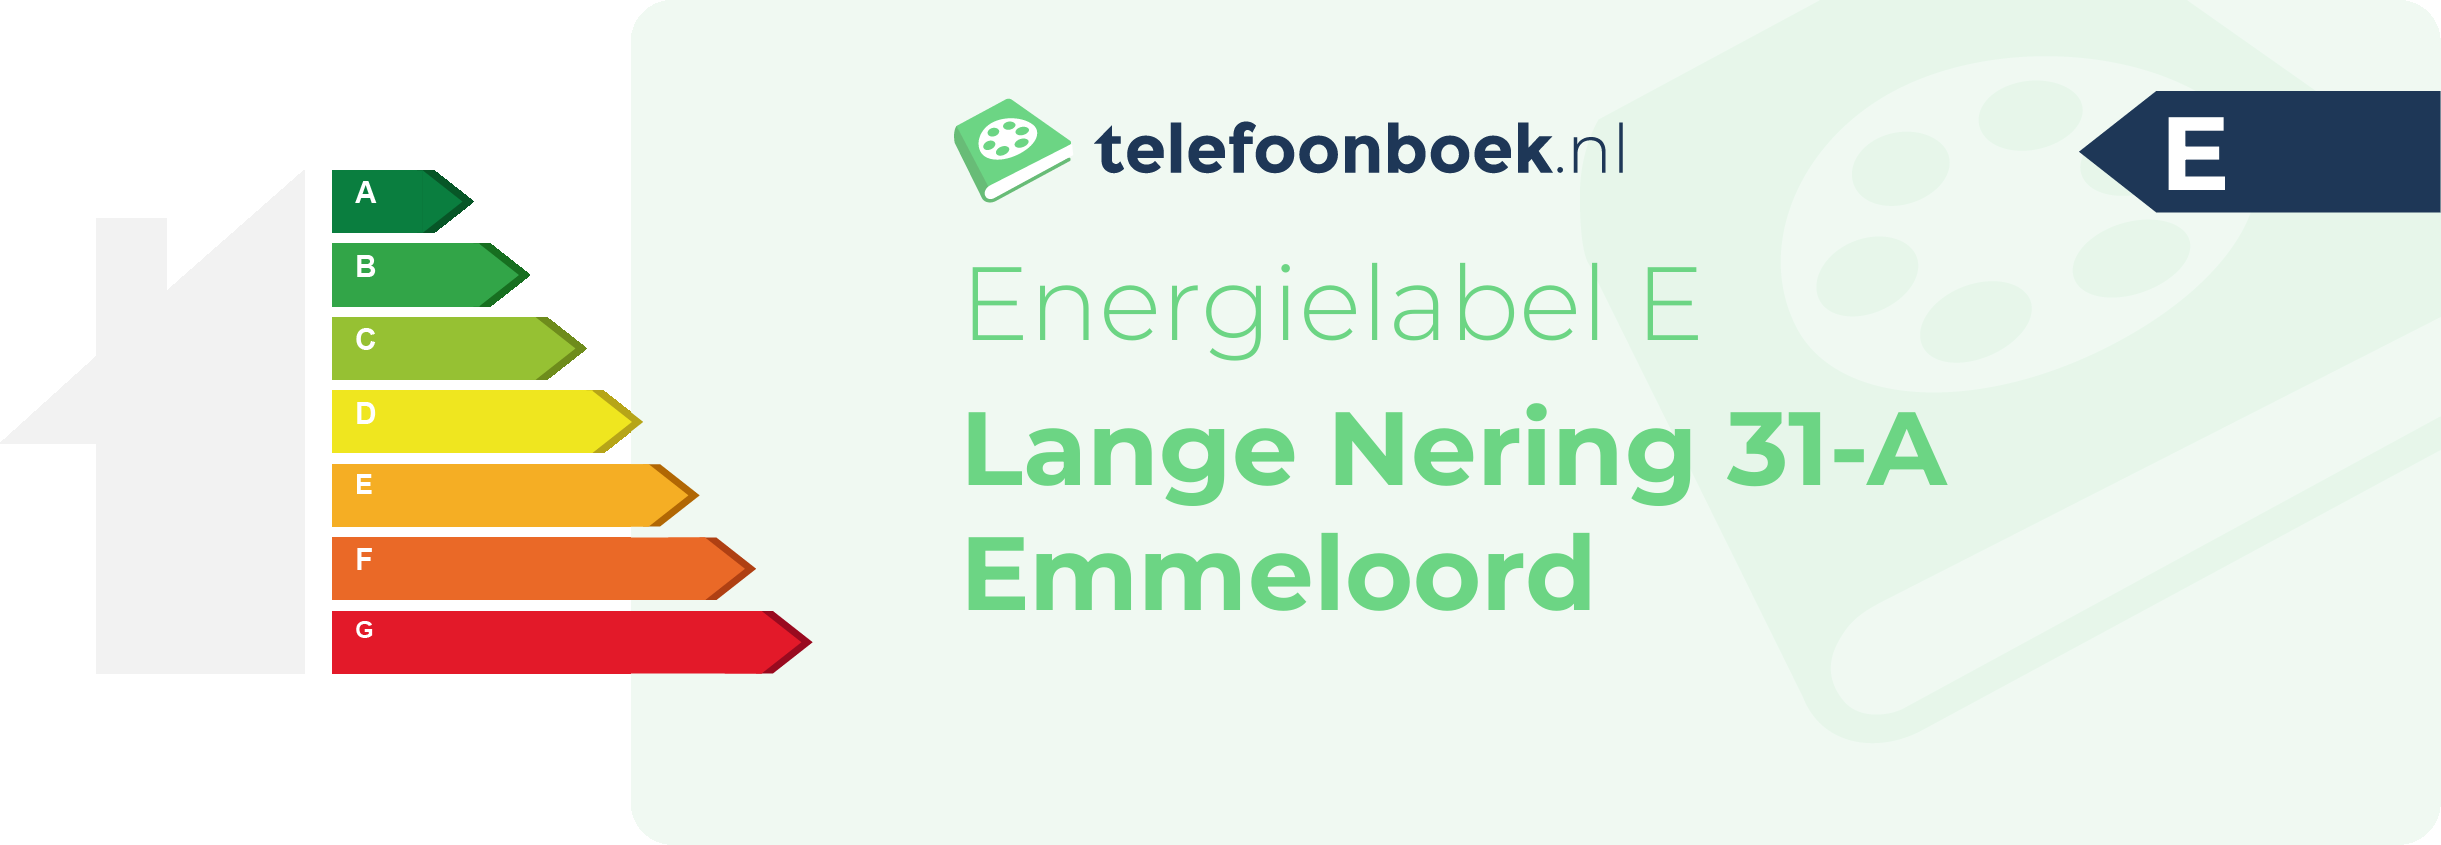 Energielabel Lange Nering 31-A Emmeloord